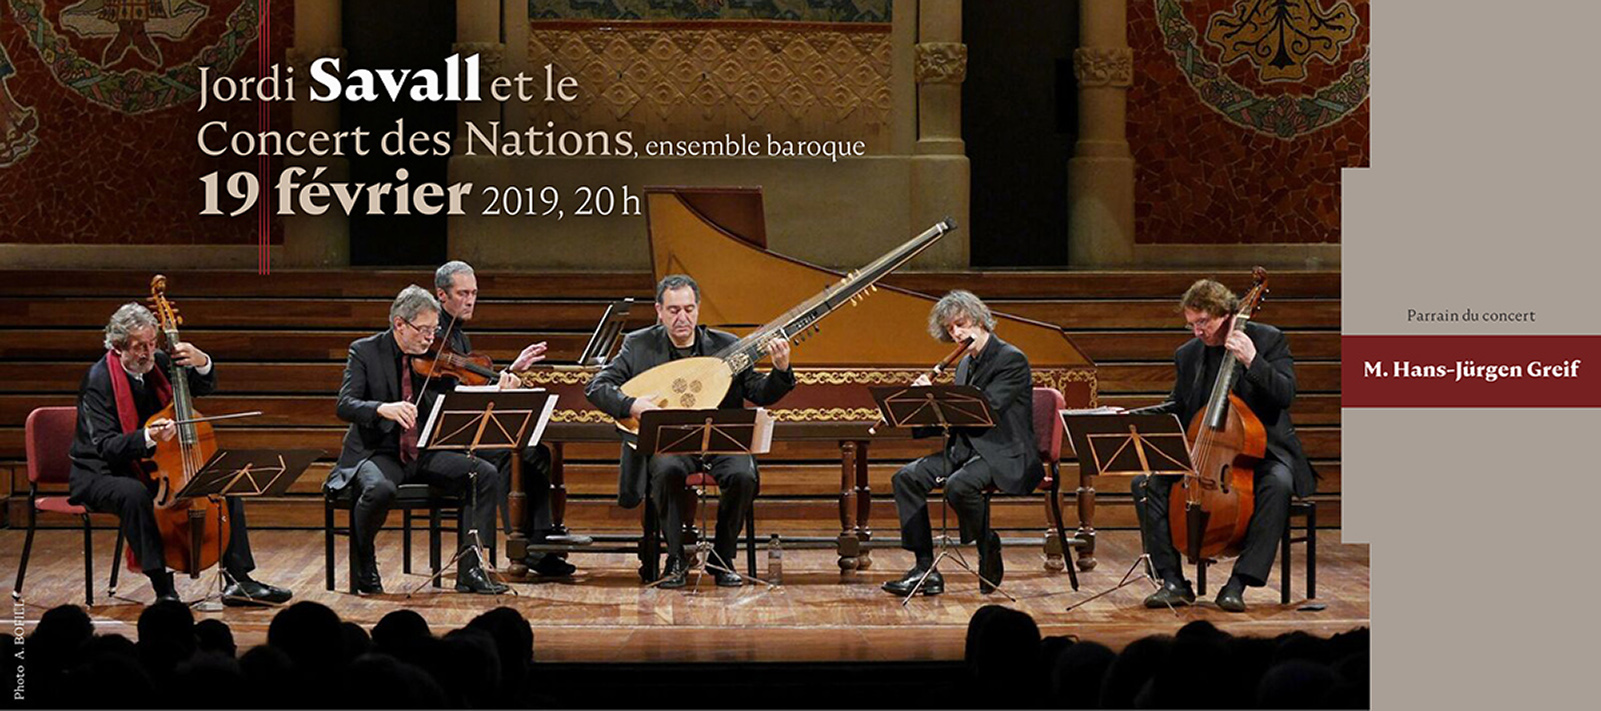 Jordi Savall et le Concert des Nations jouent Tous les matins du monde au Club musical de Québec.